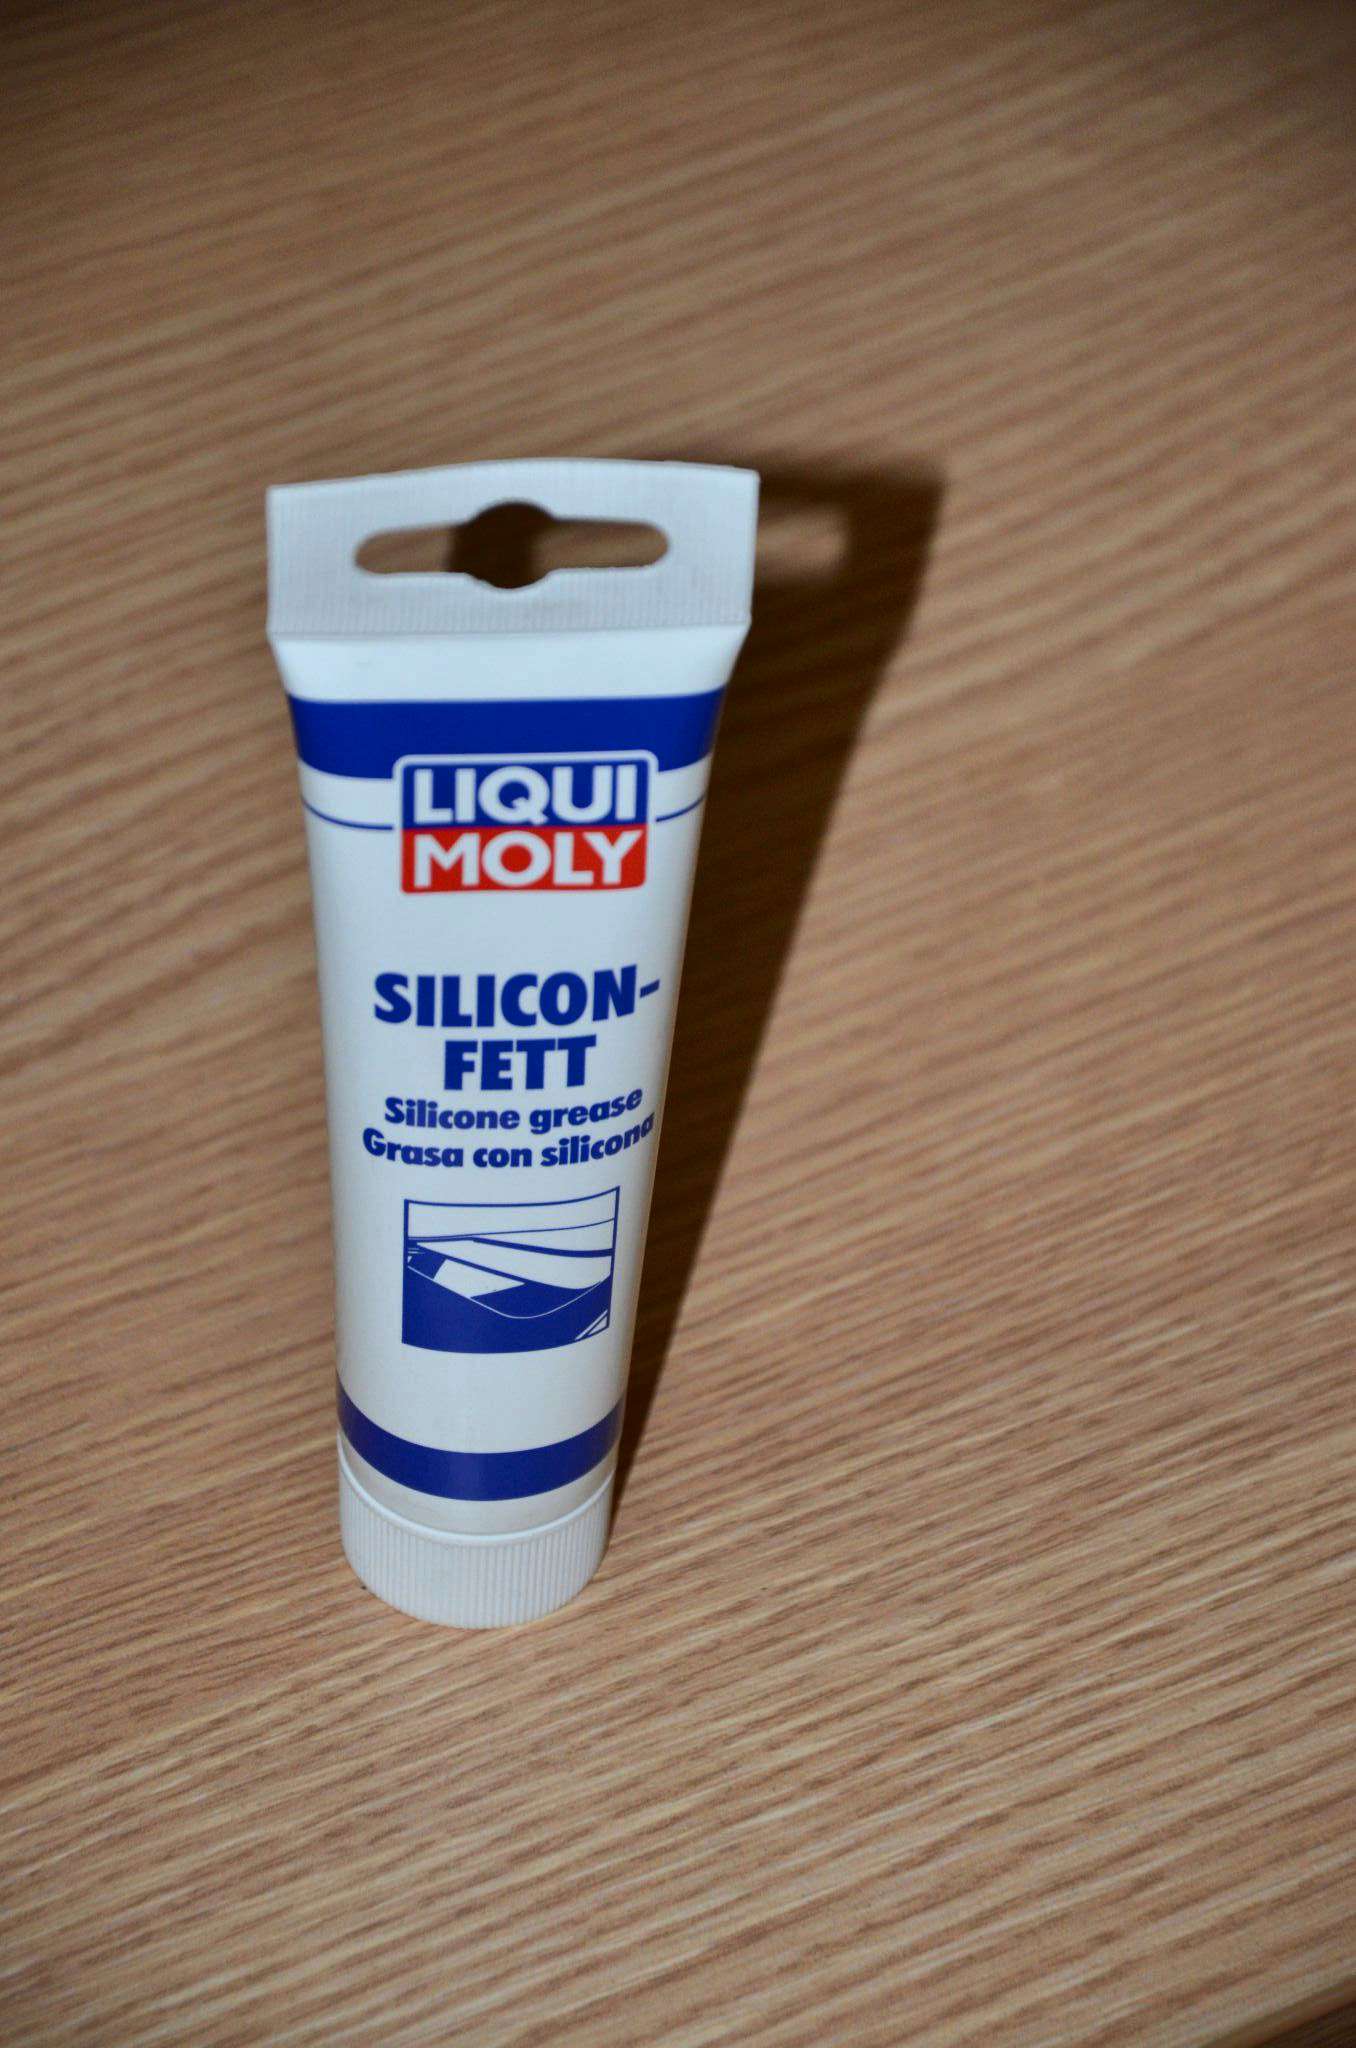  силиконовая LIQUI MOLY Silicon-Fett, 0,1 л. —  в интернет .